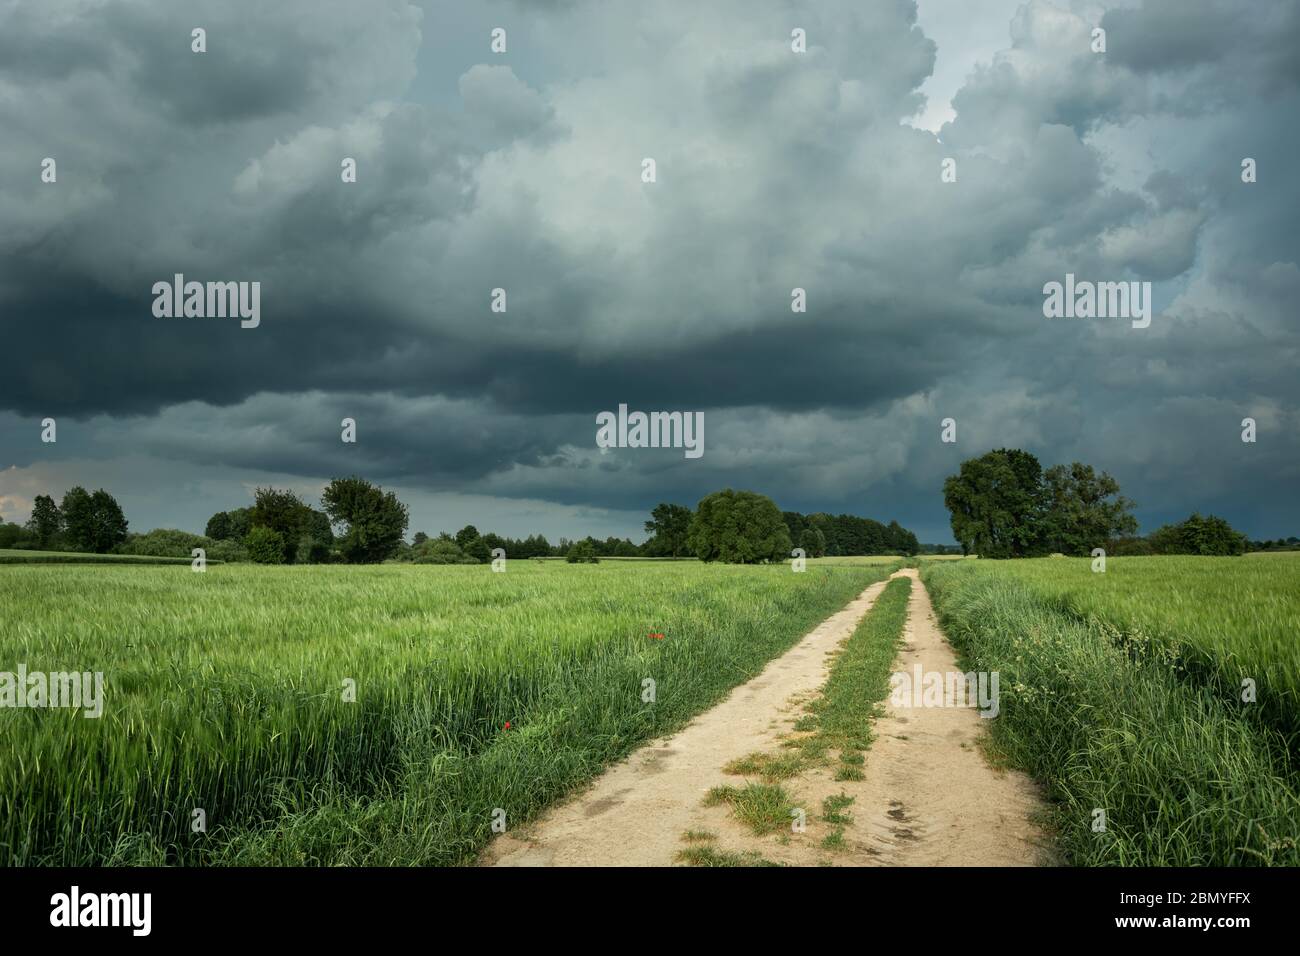 Una strada sterrata attraverso campi con grano verde e nuvole di pioggia scure nel cielo Foto Stock